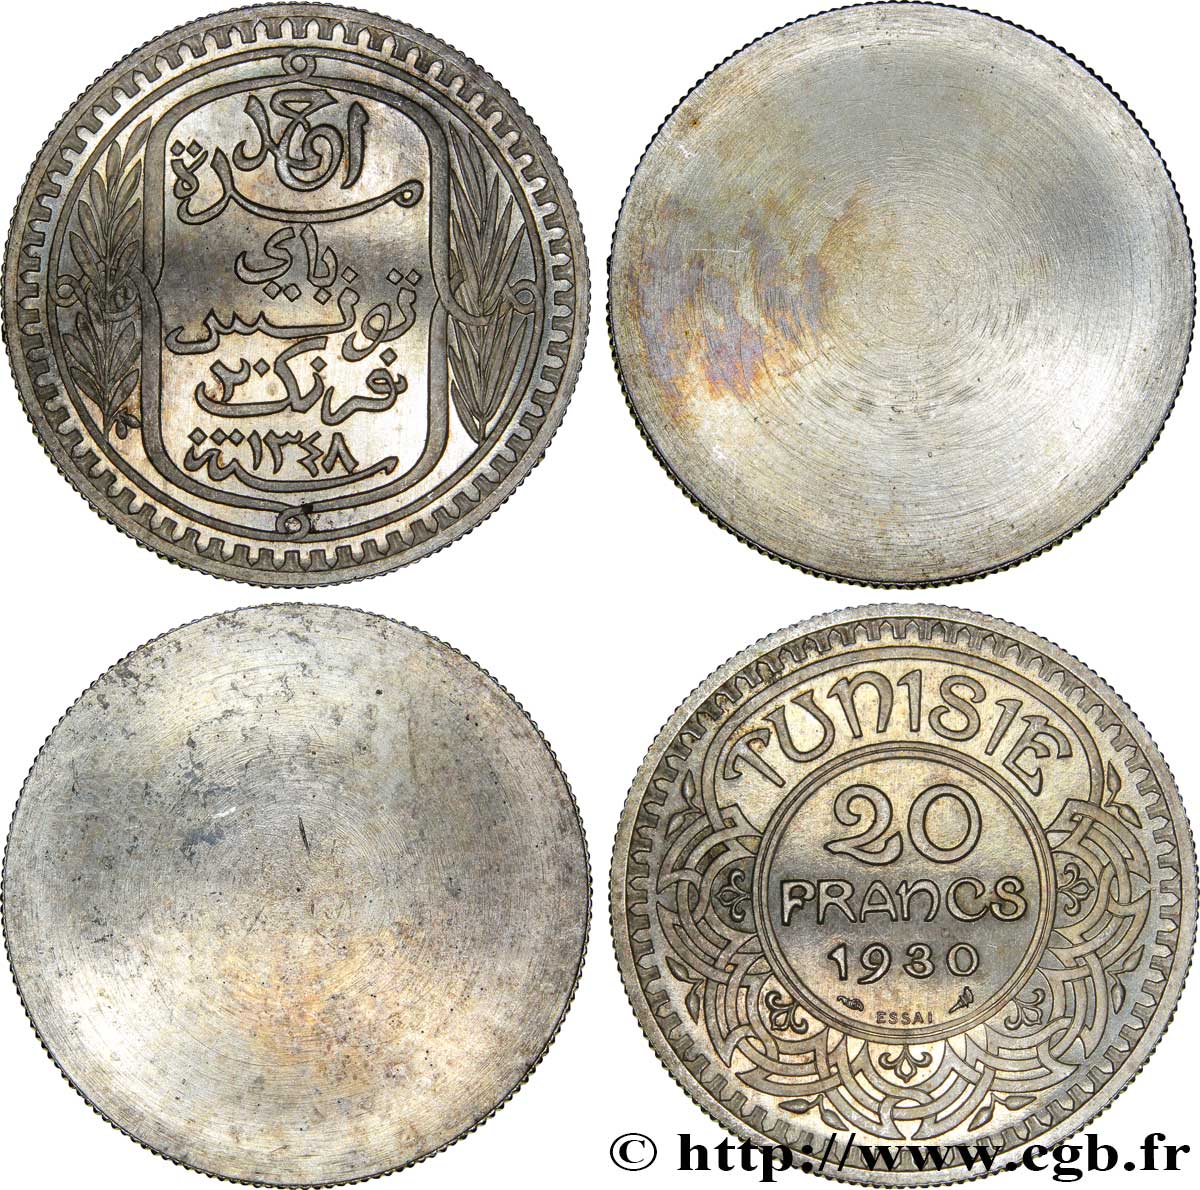 TUNISIA - French protectorate Paire d’essais unifaces de 20 Francs au nom de Ahmed Bey 1930 Paris MS 